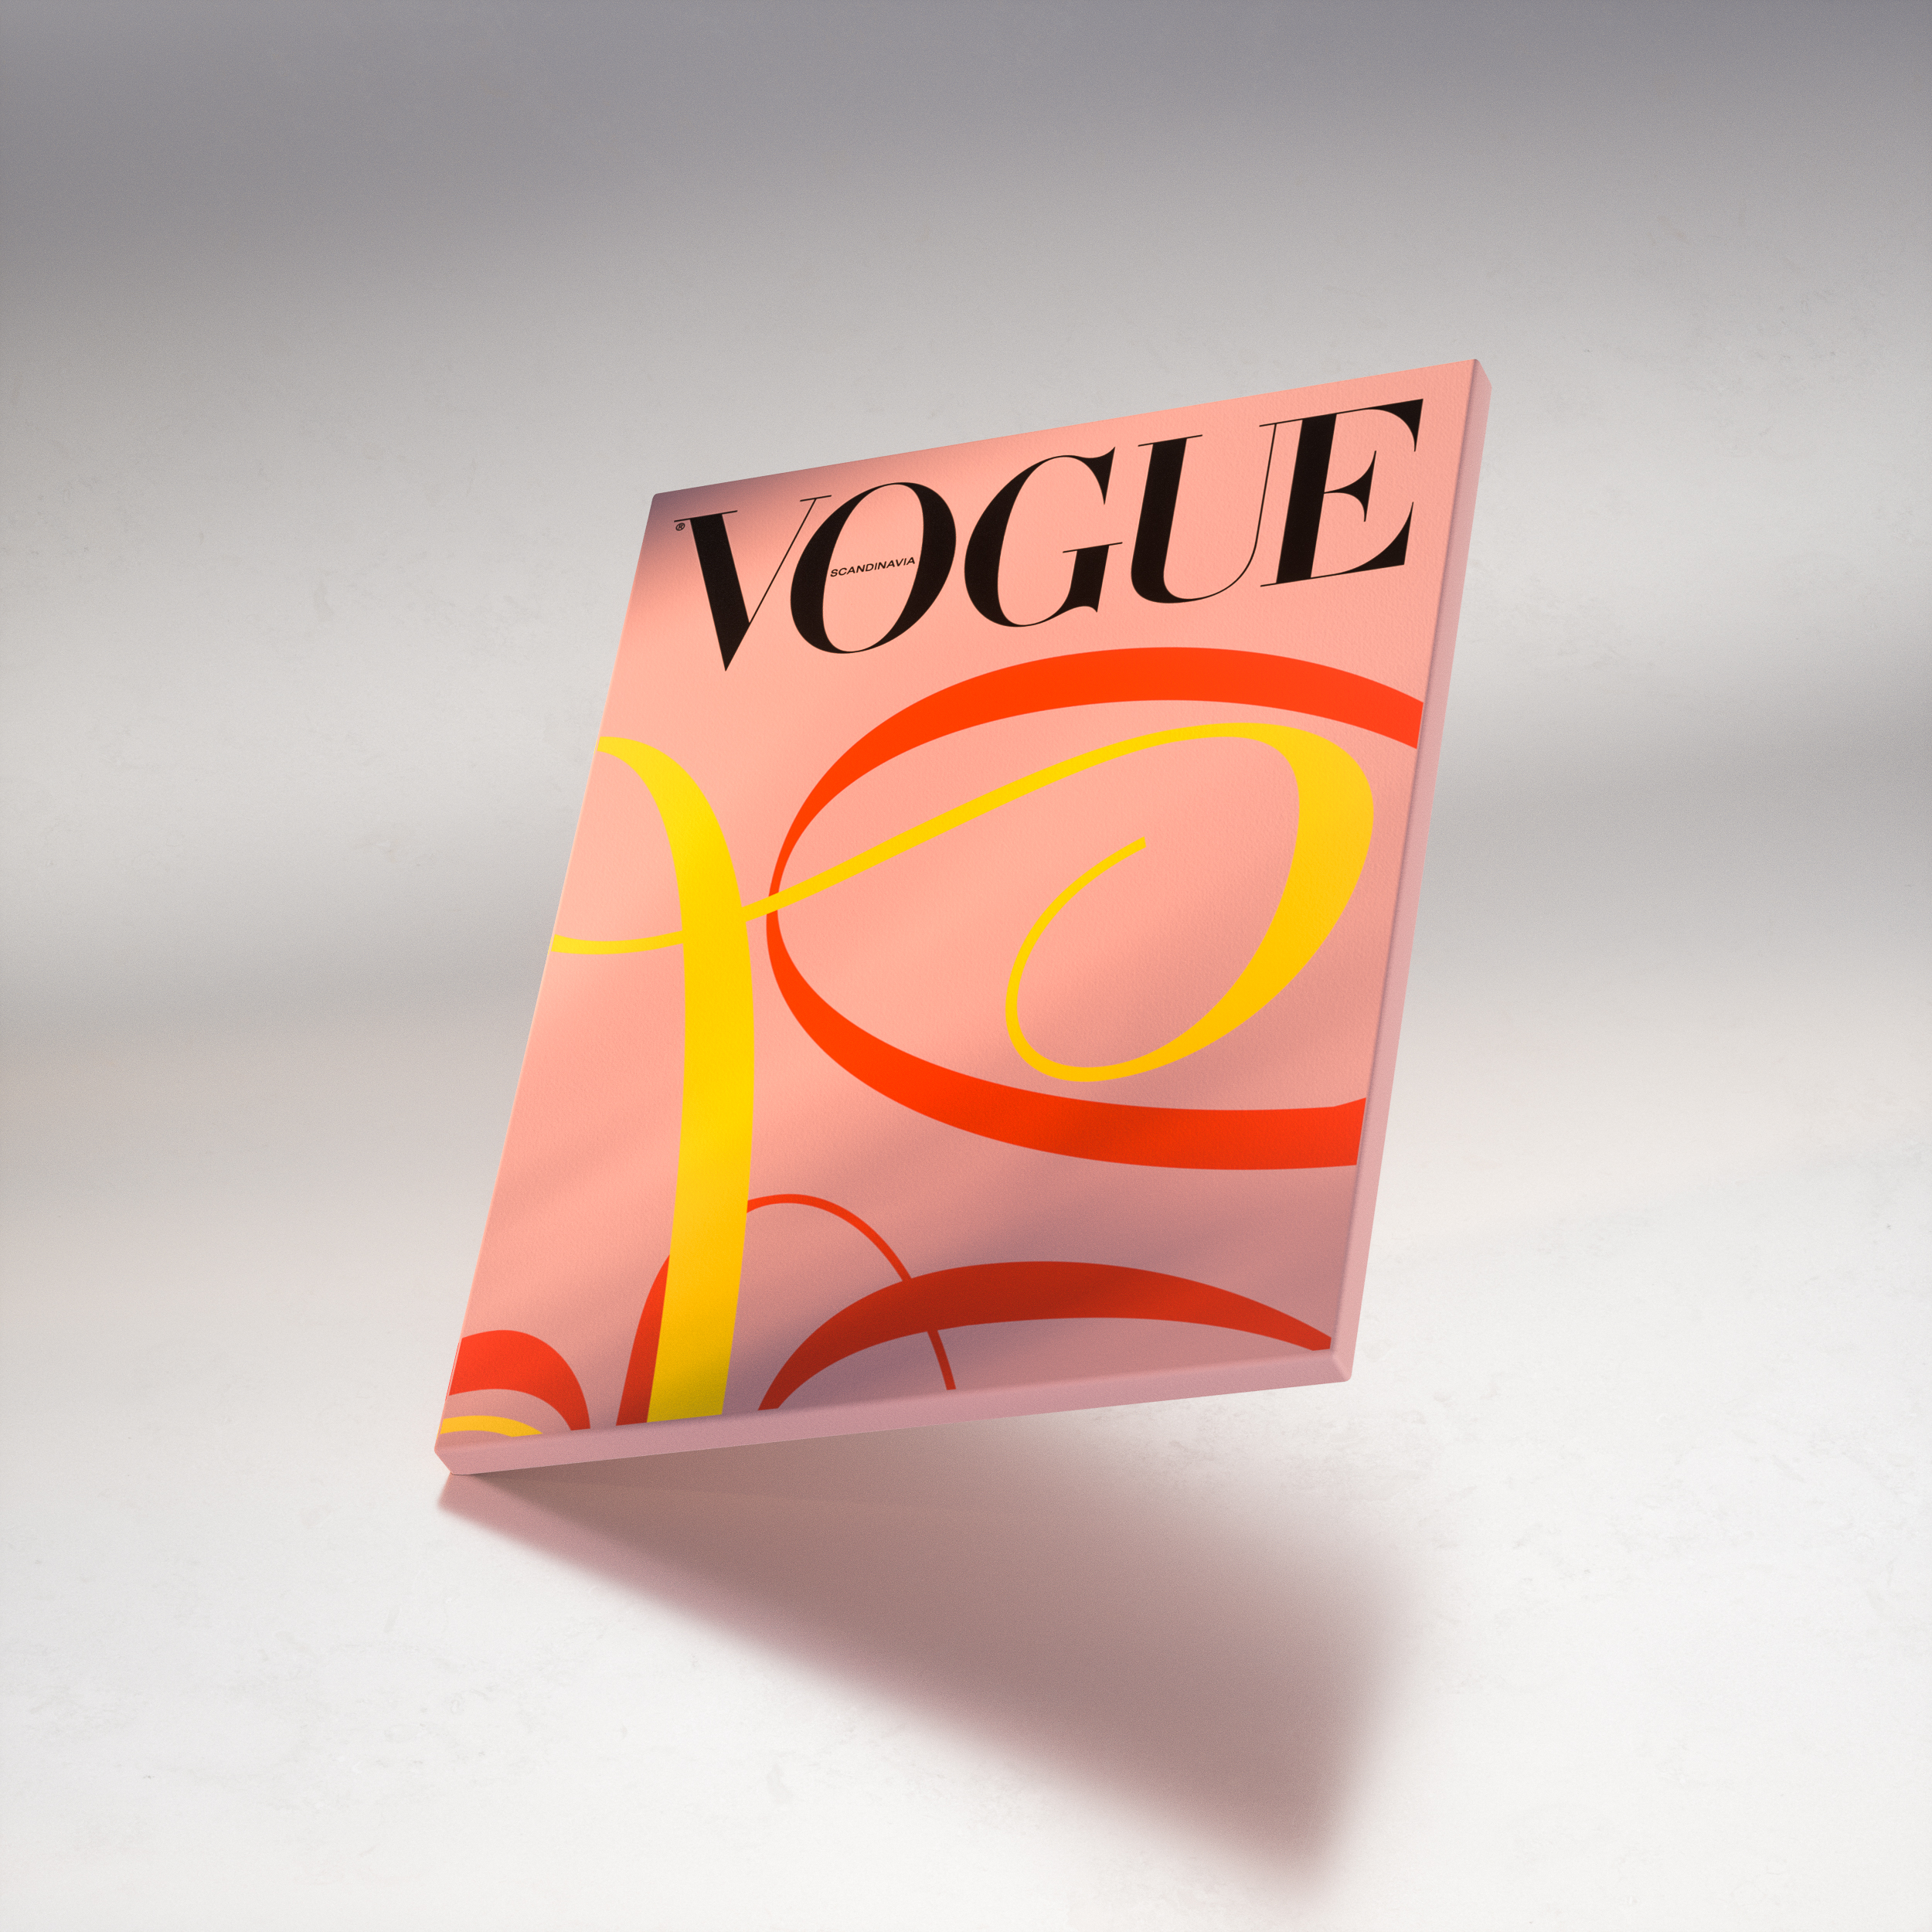 Как создать самый экологичный журнал в мире — рассказывает главный редактор скандинавского Vogue